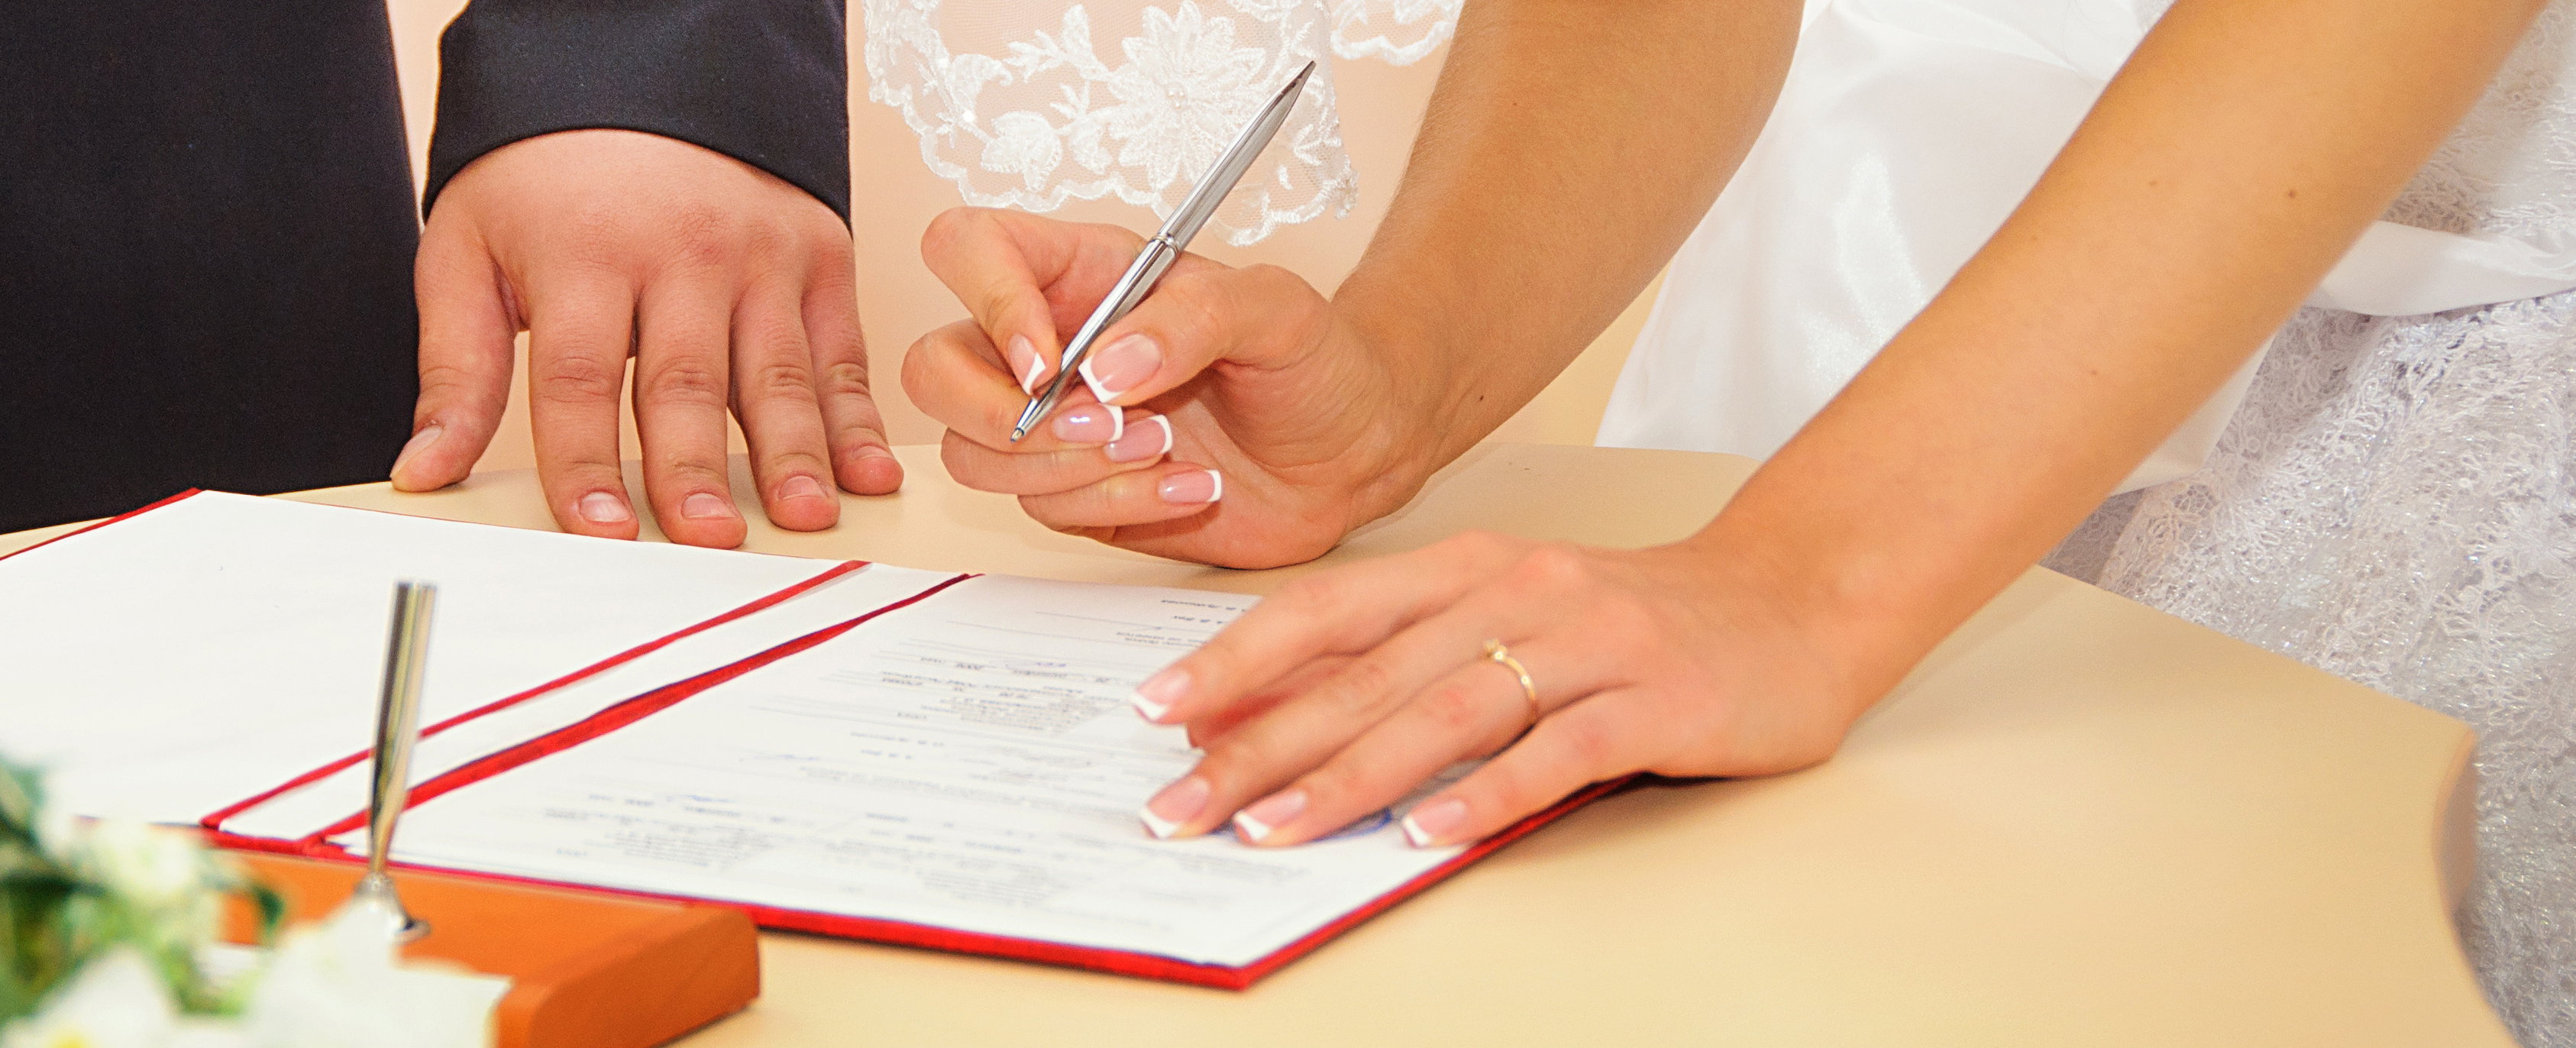 Standesamtlich Heiraten - Vorbereitungen und Ablauf eurer Hochzeit